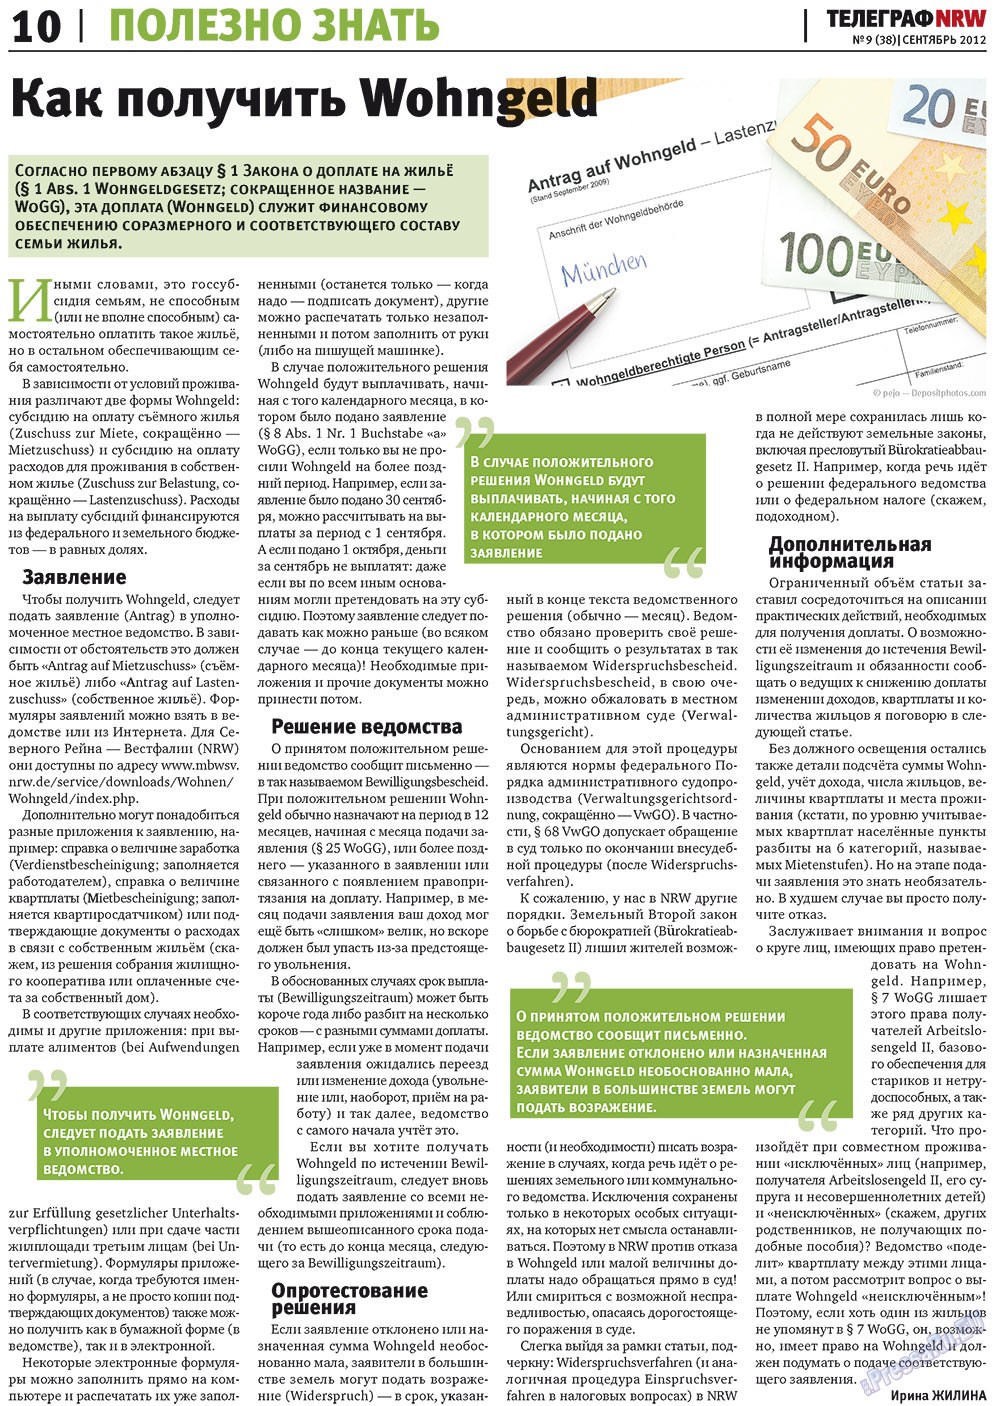 Телеграф NRW (газета). 2012 год, номер 9, стр. 10